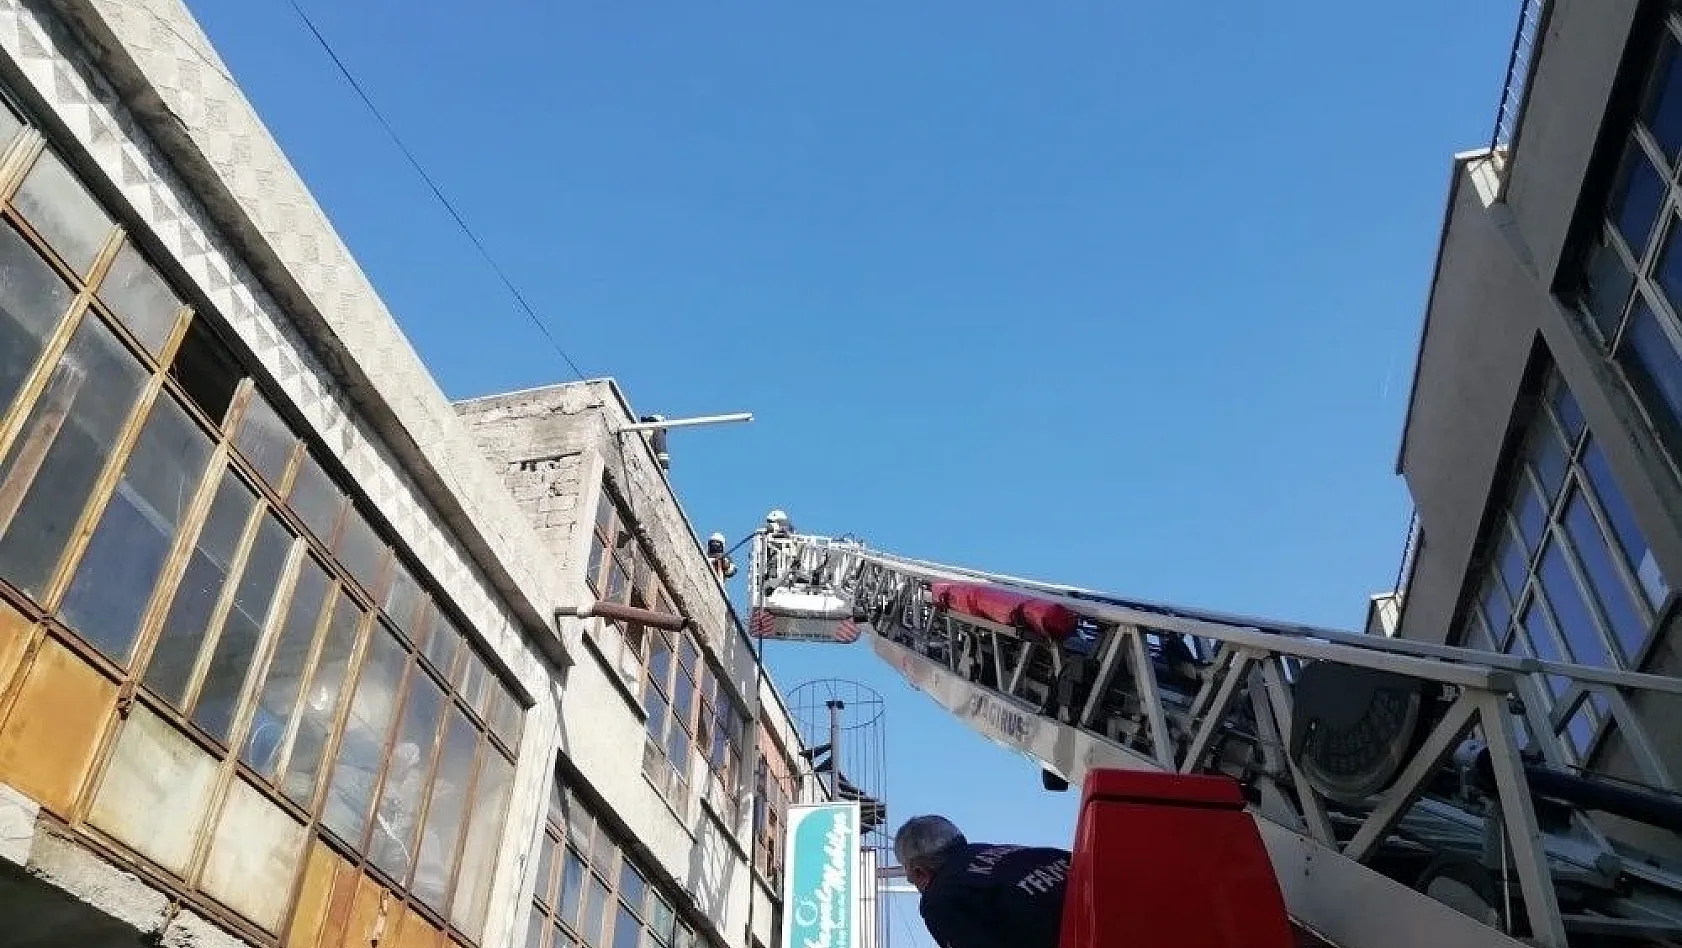 Kayseri'de iş yerinin çatısında çıkan yangın söndürüldü